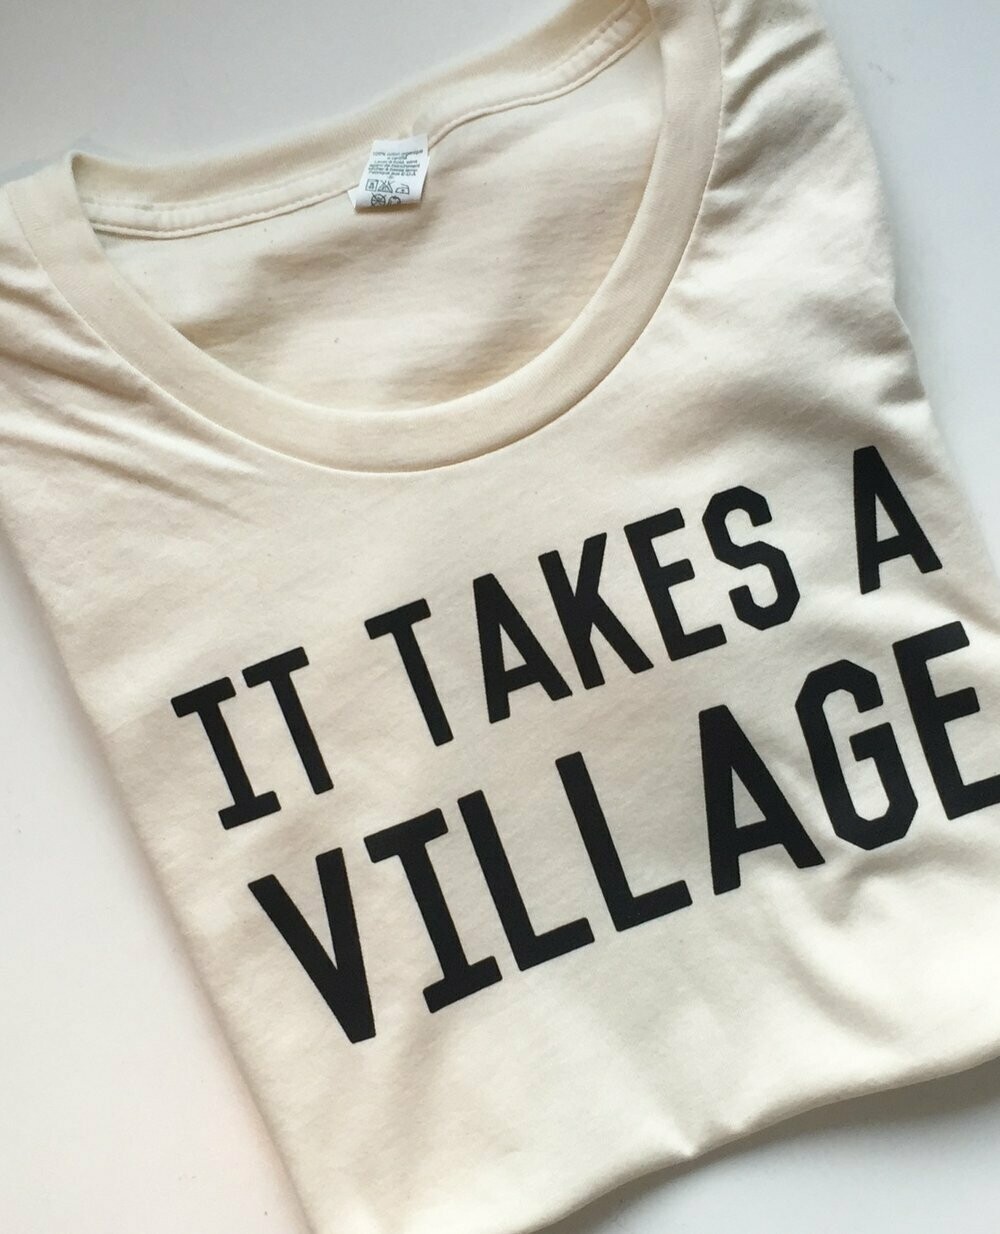 It Takes A Village Unisex T-Shirt